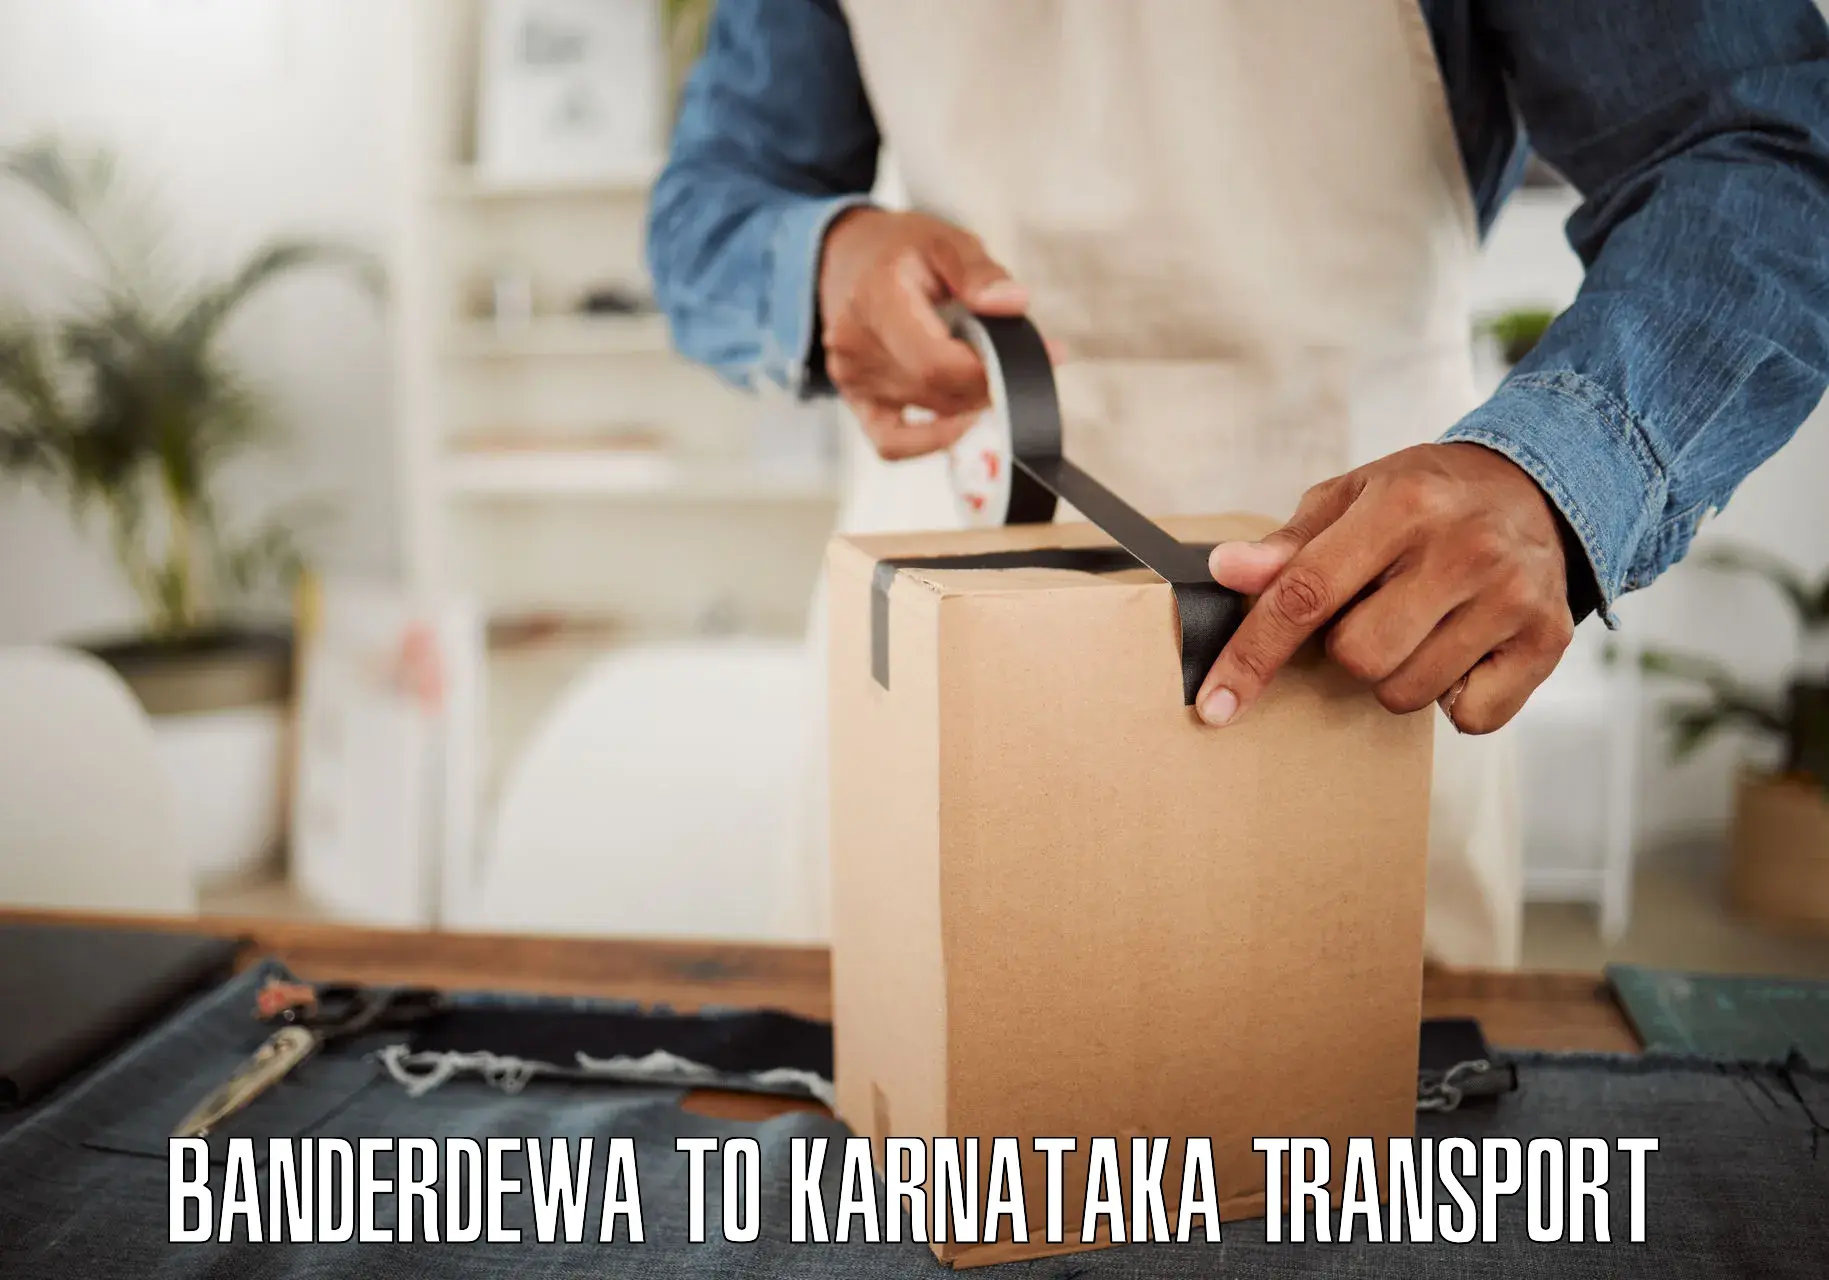 Online transport service Banderdewa to Munavalli